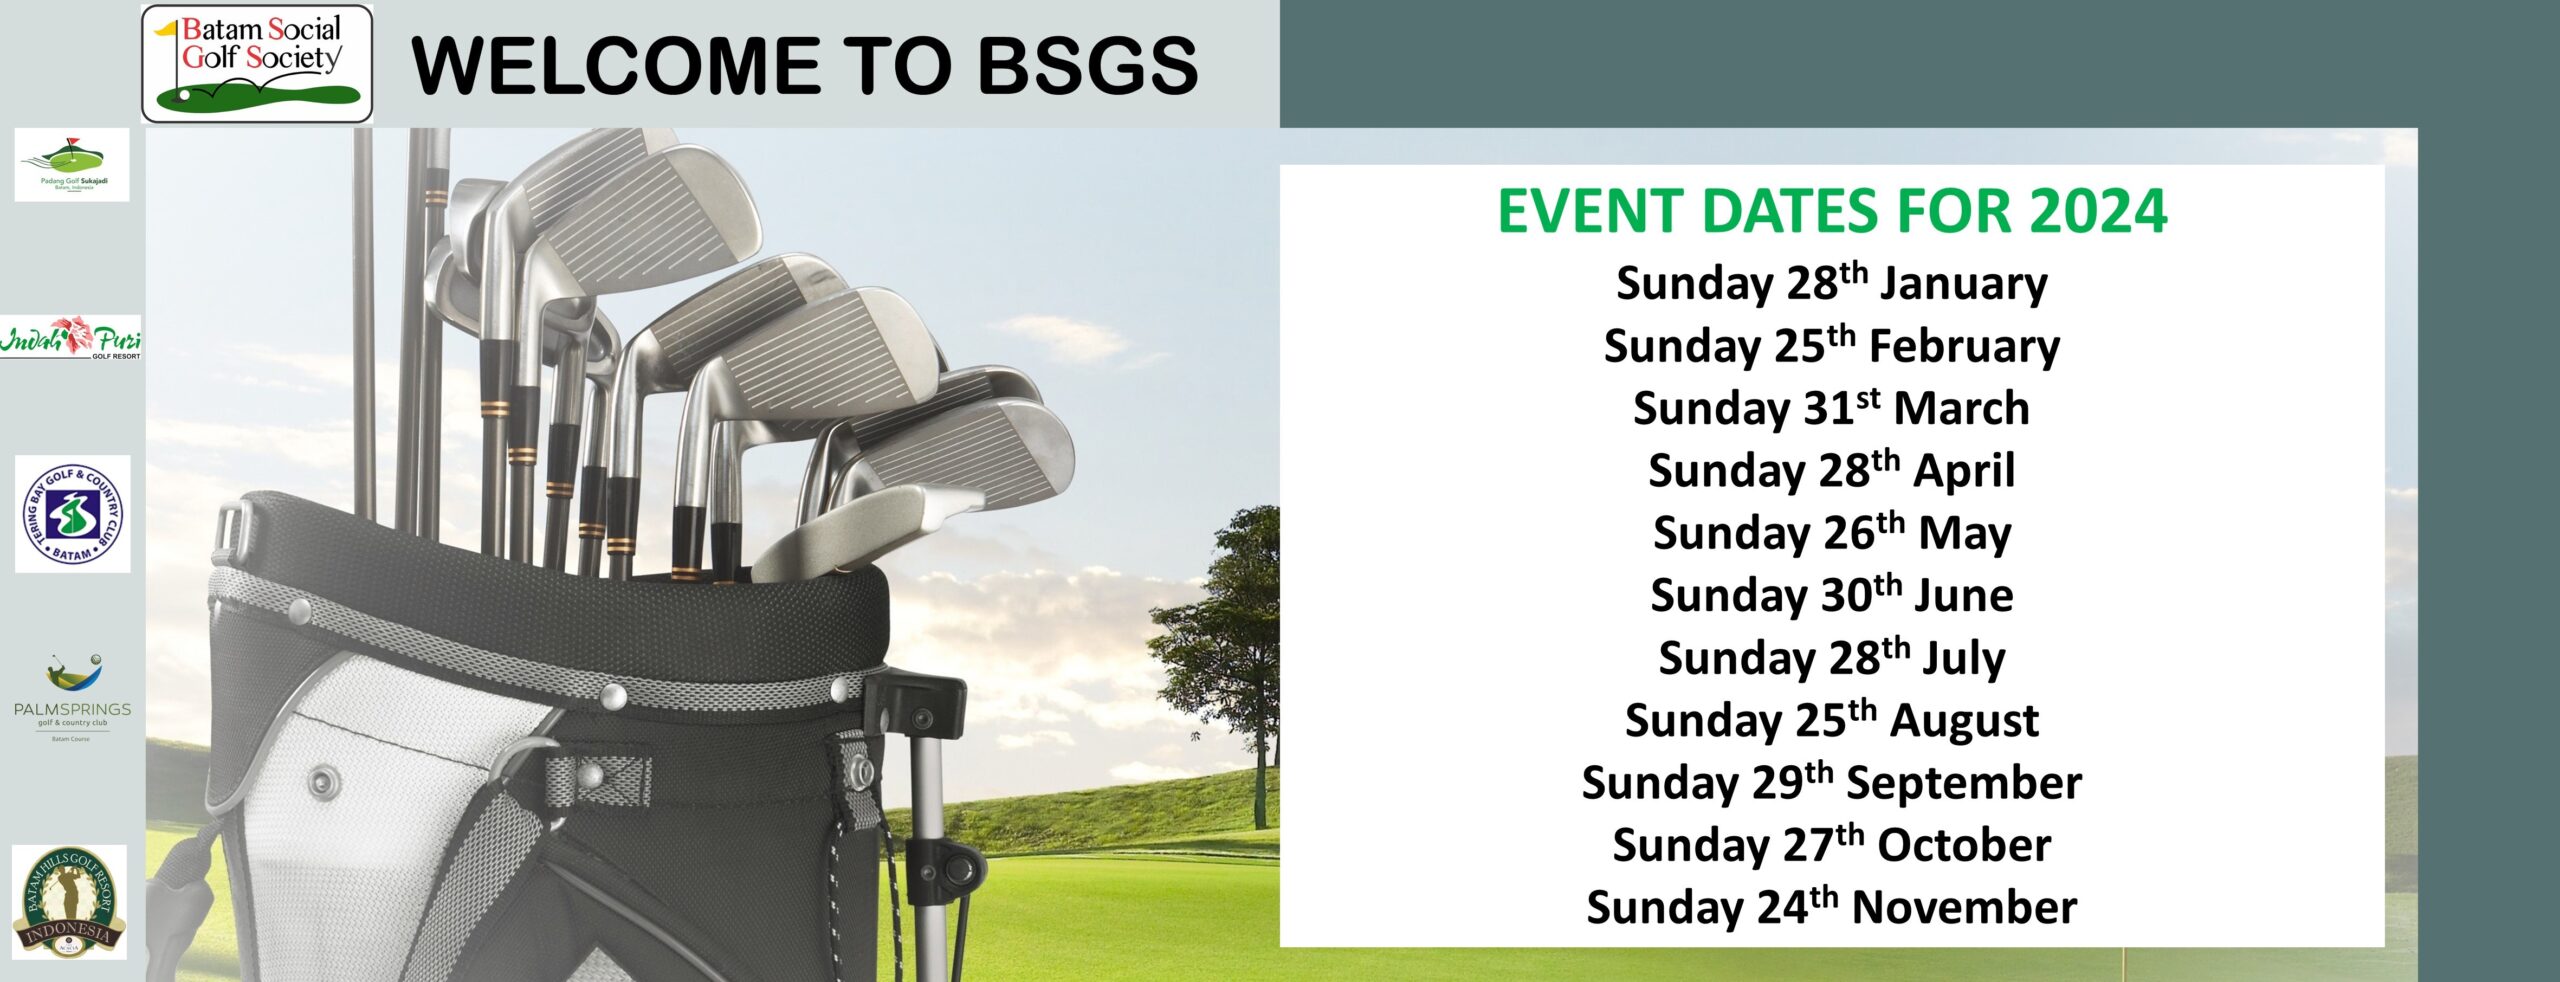 BSGS - Batam Social Golf Society